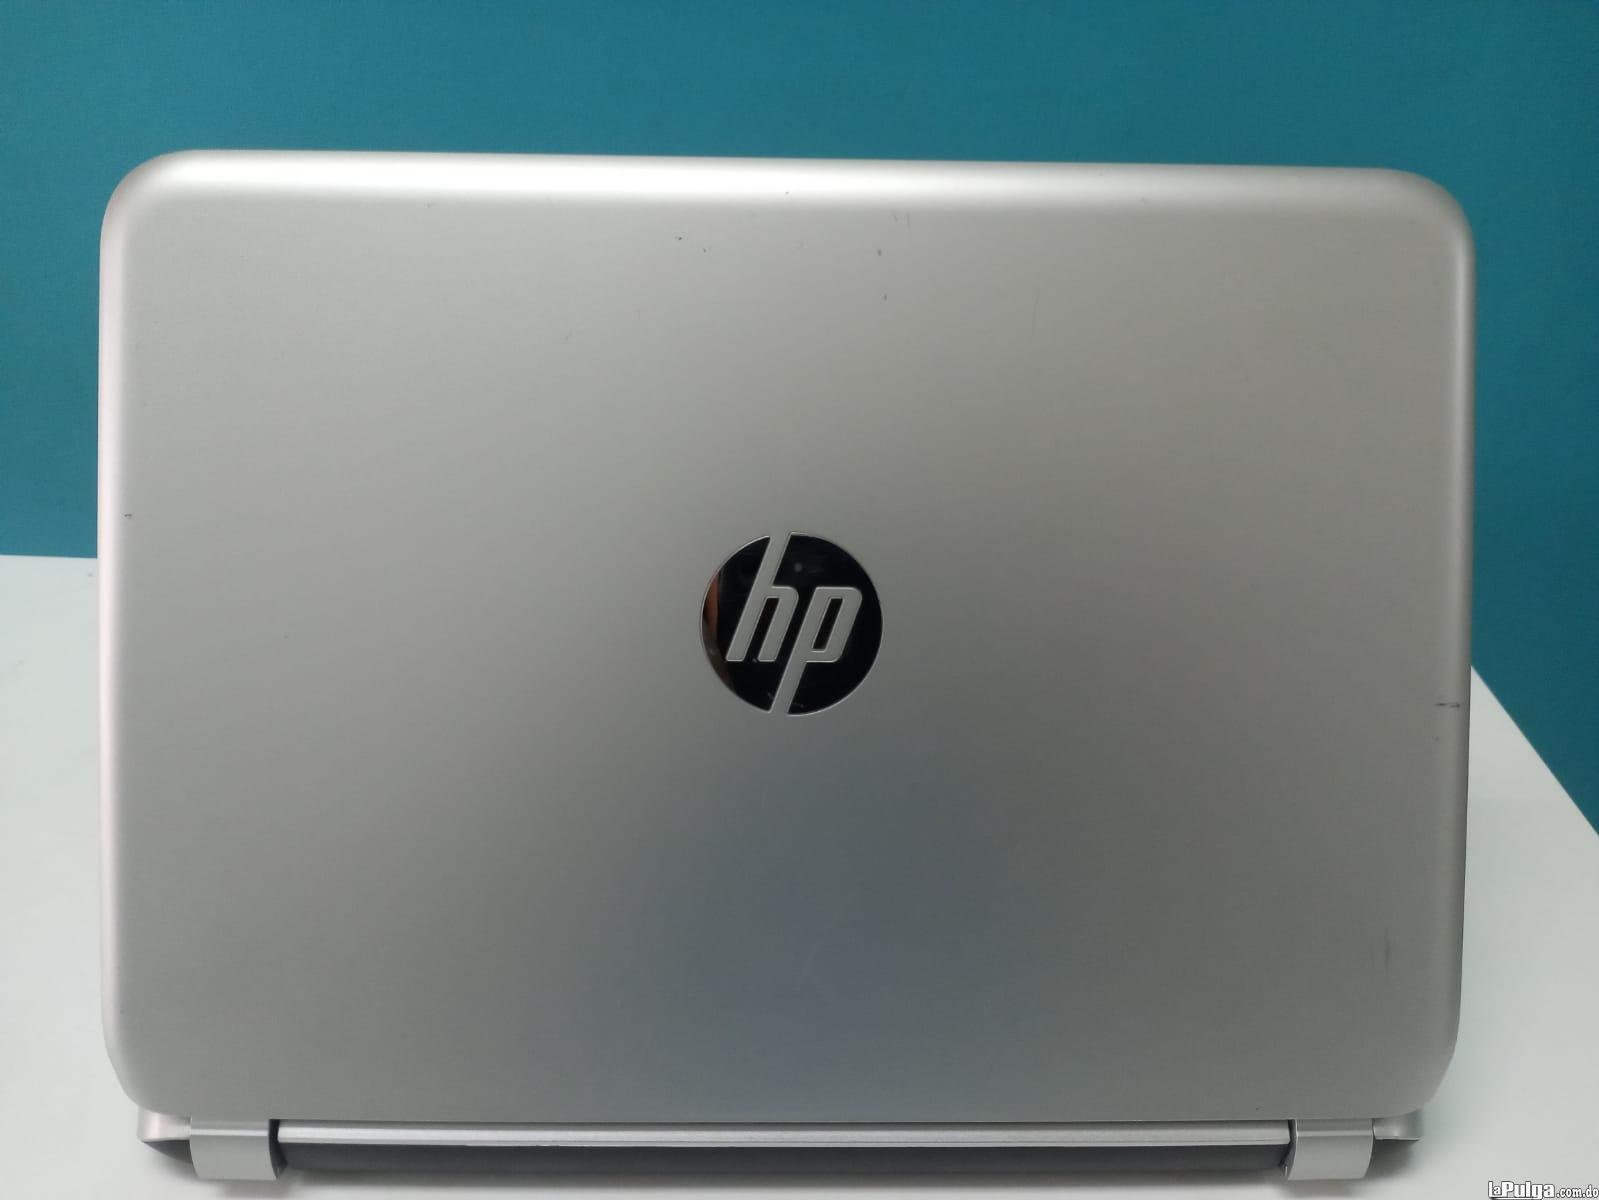 Laptop HP 210 G1 / 4th Gen Intel Core i3 / 4GB DDR3 / 120GB SSD Foto 7161769-3.jpg